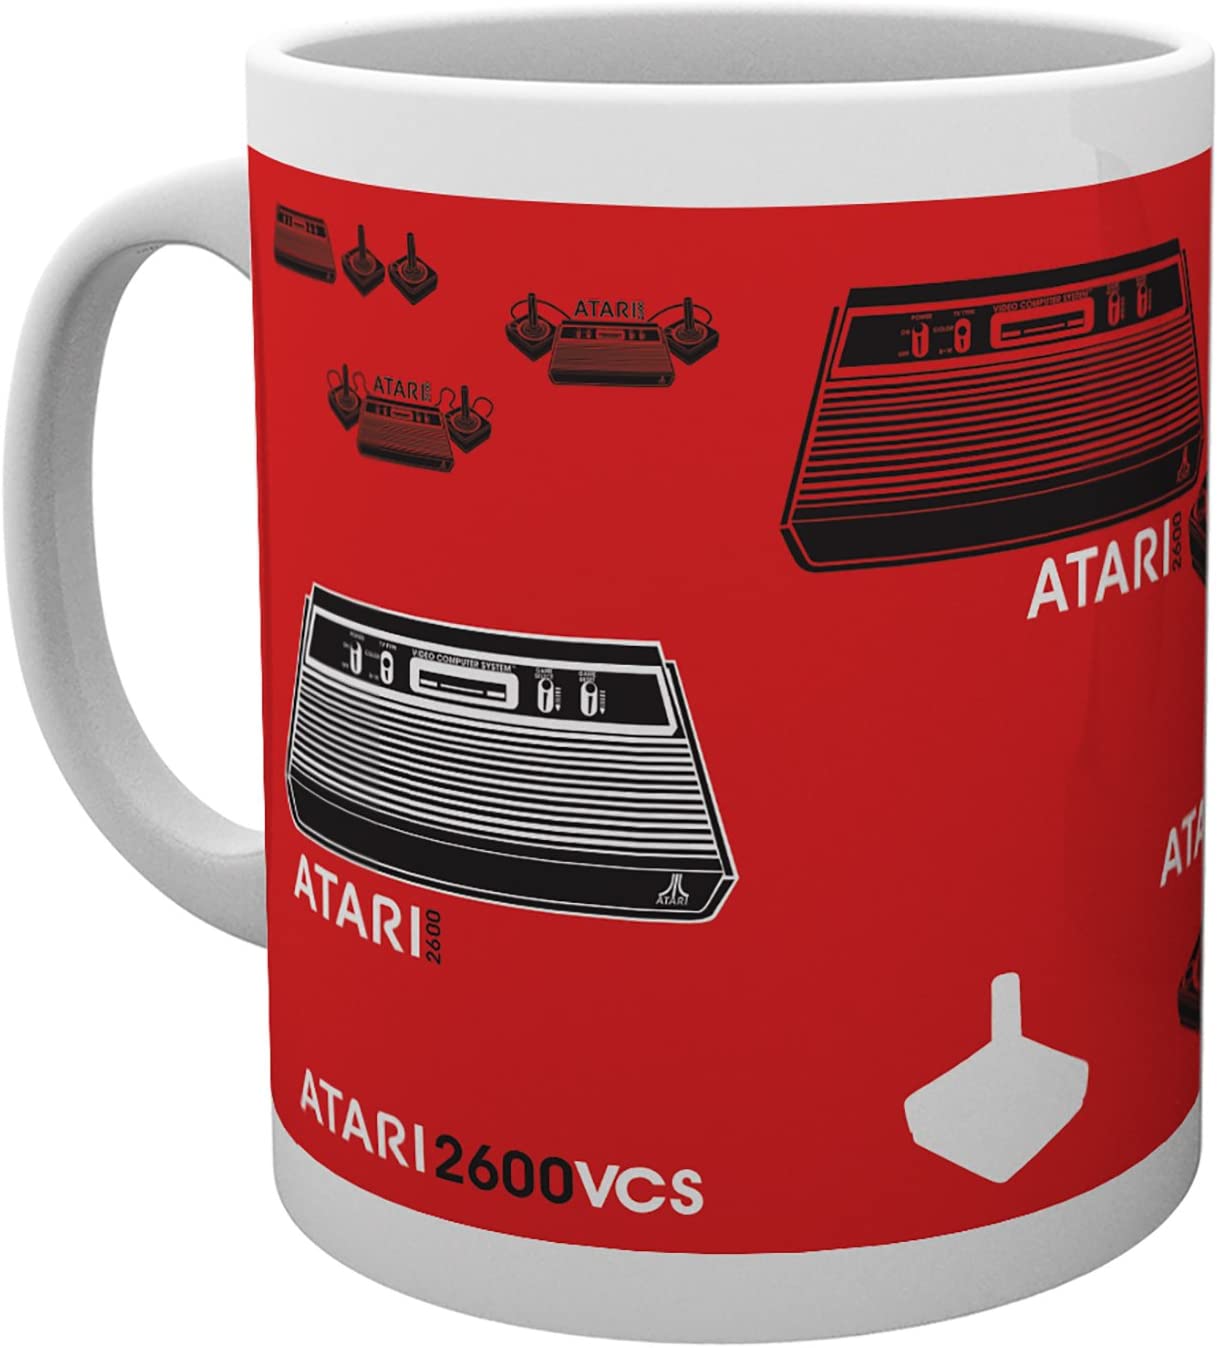 Atari Mug - Red Atari 2600 VCS